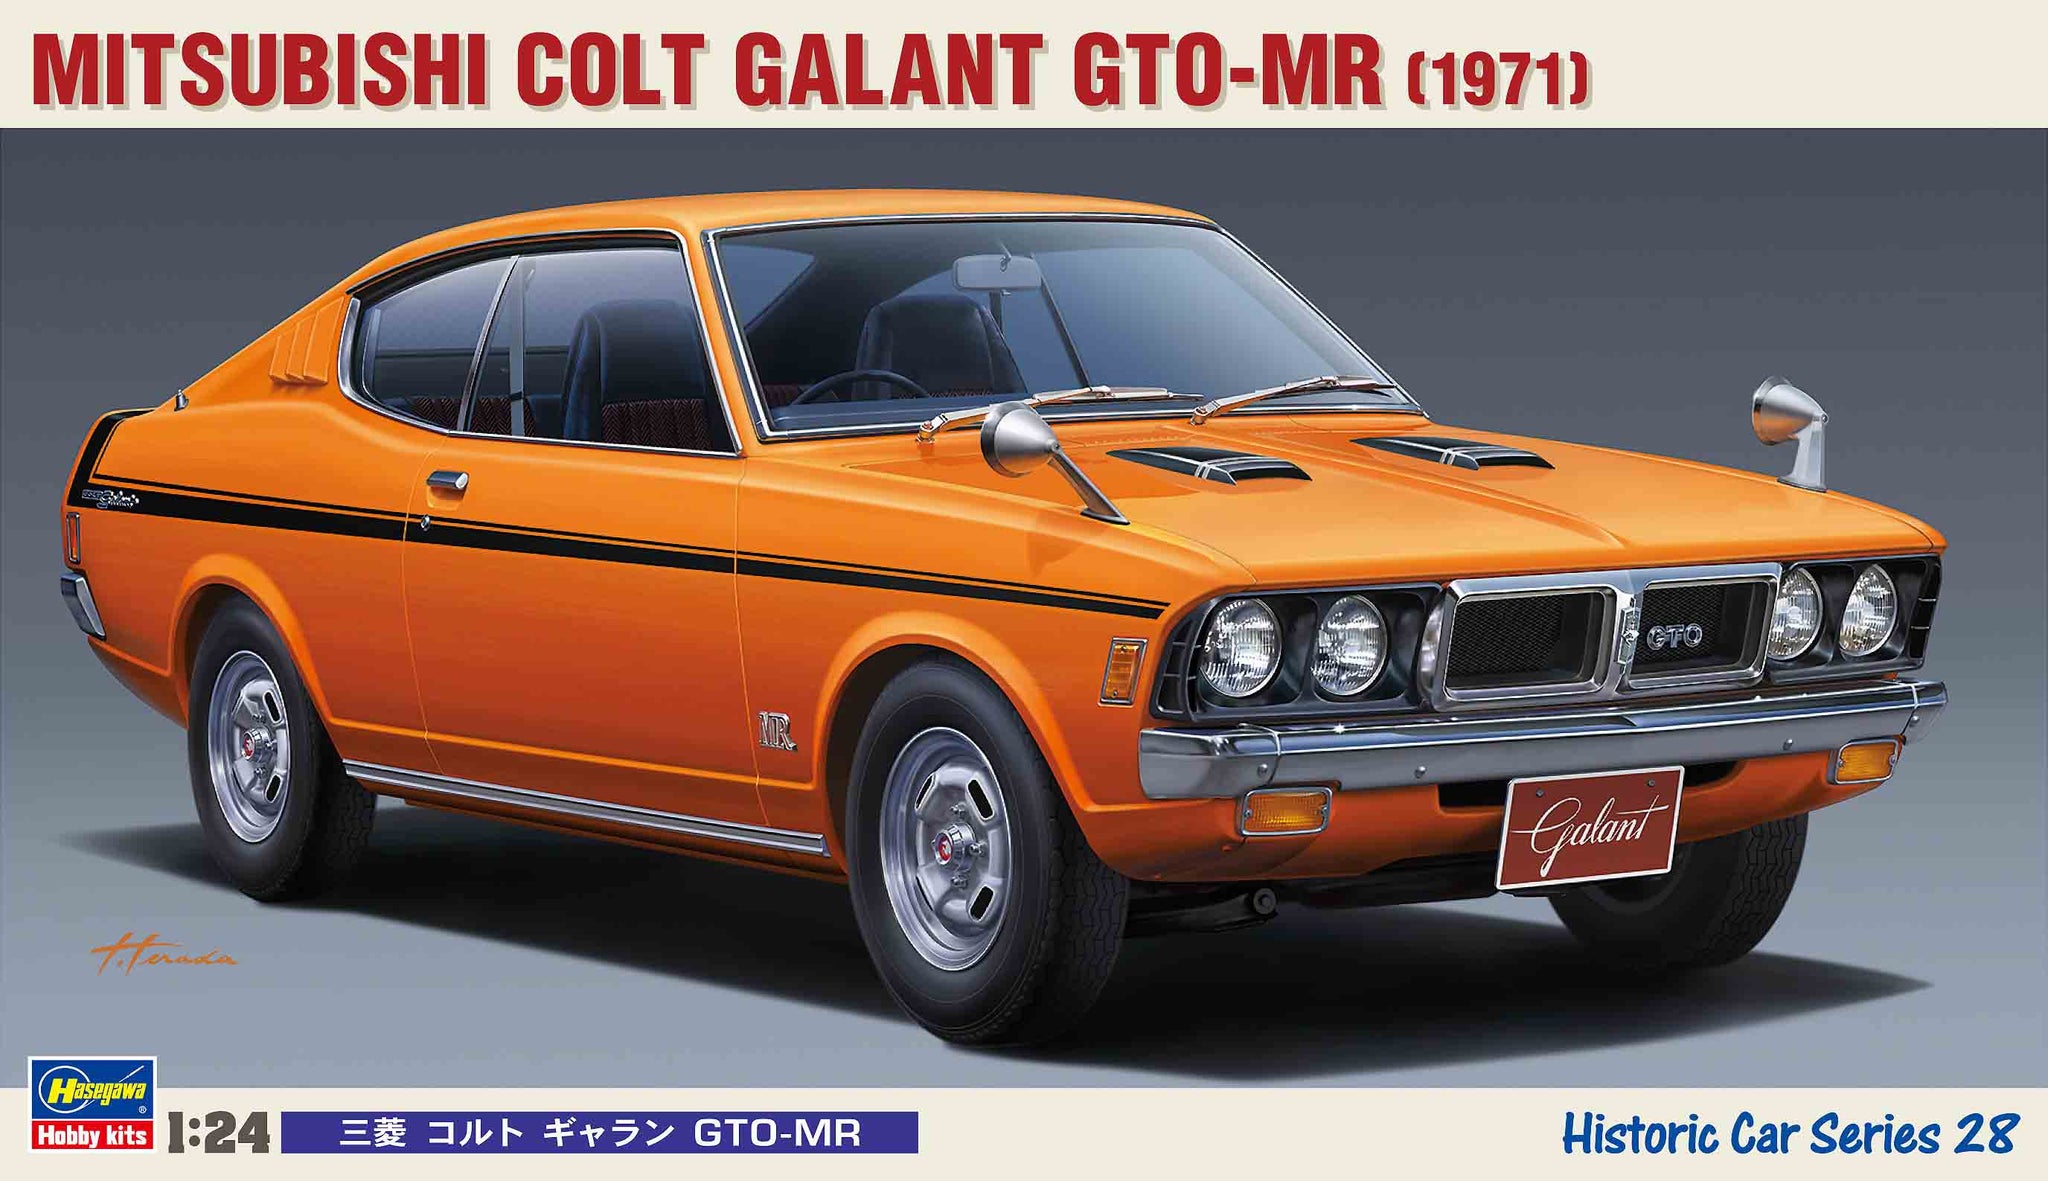 1/24 Mitsubishi Colt Galant Gto-Mr 1971 | Hobby Sense